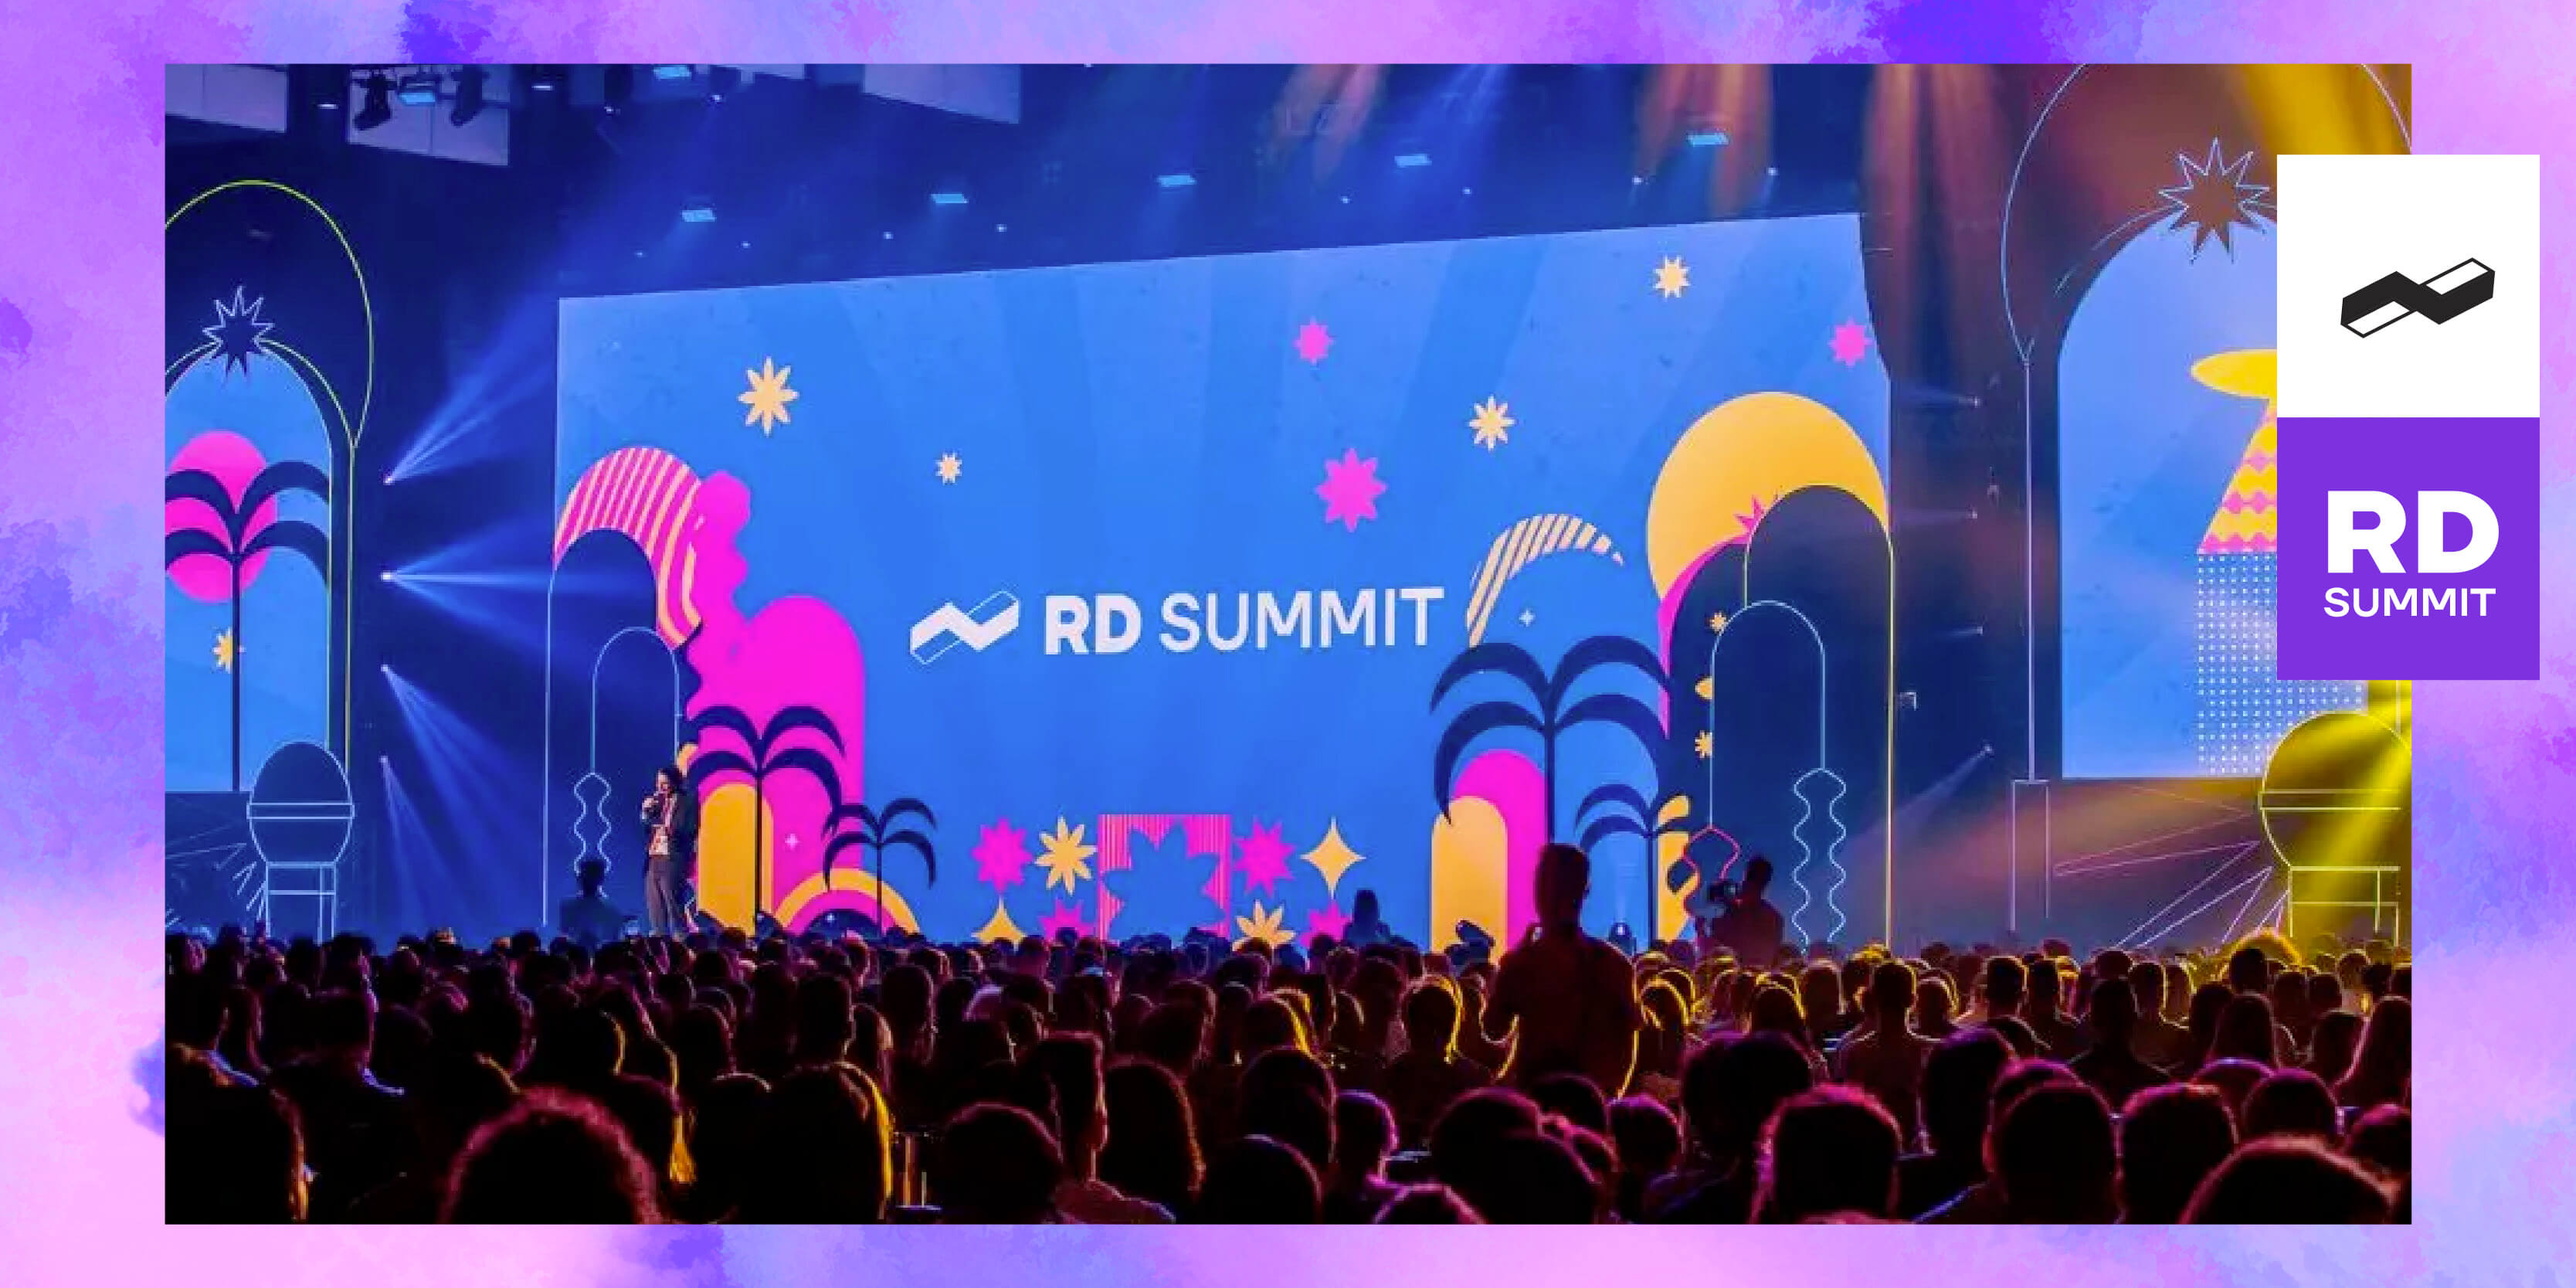 RD Summit 2023: evento promete imersão em marketing, vendas e inovação